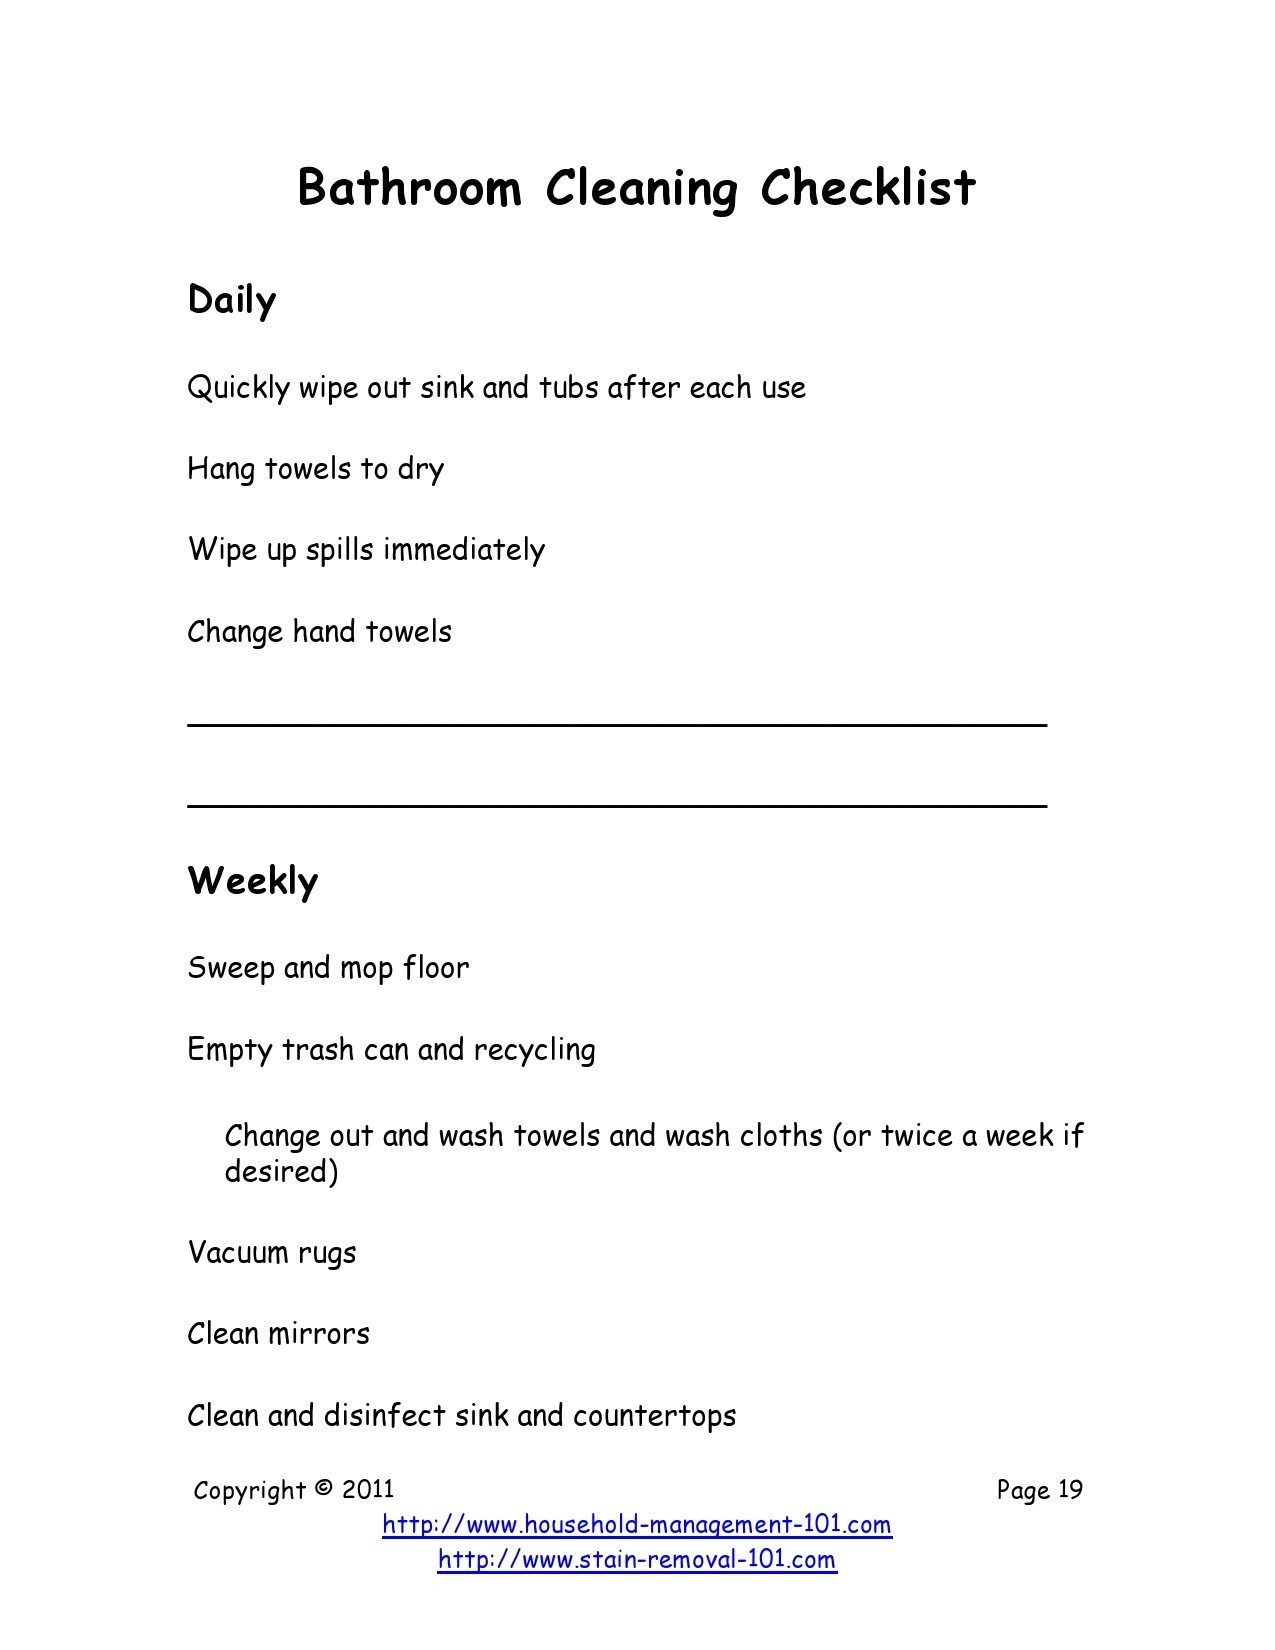 Free bathroom cleaning checklist 19